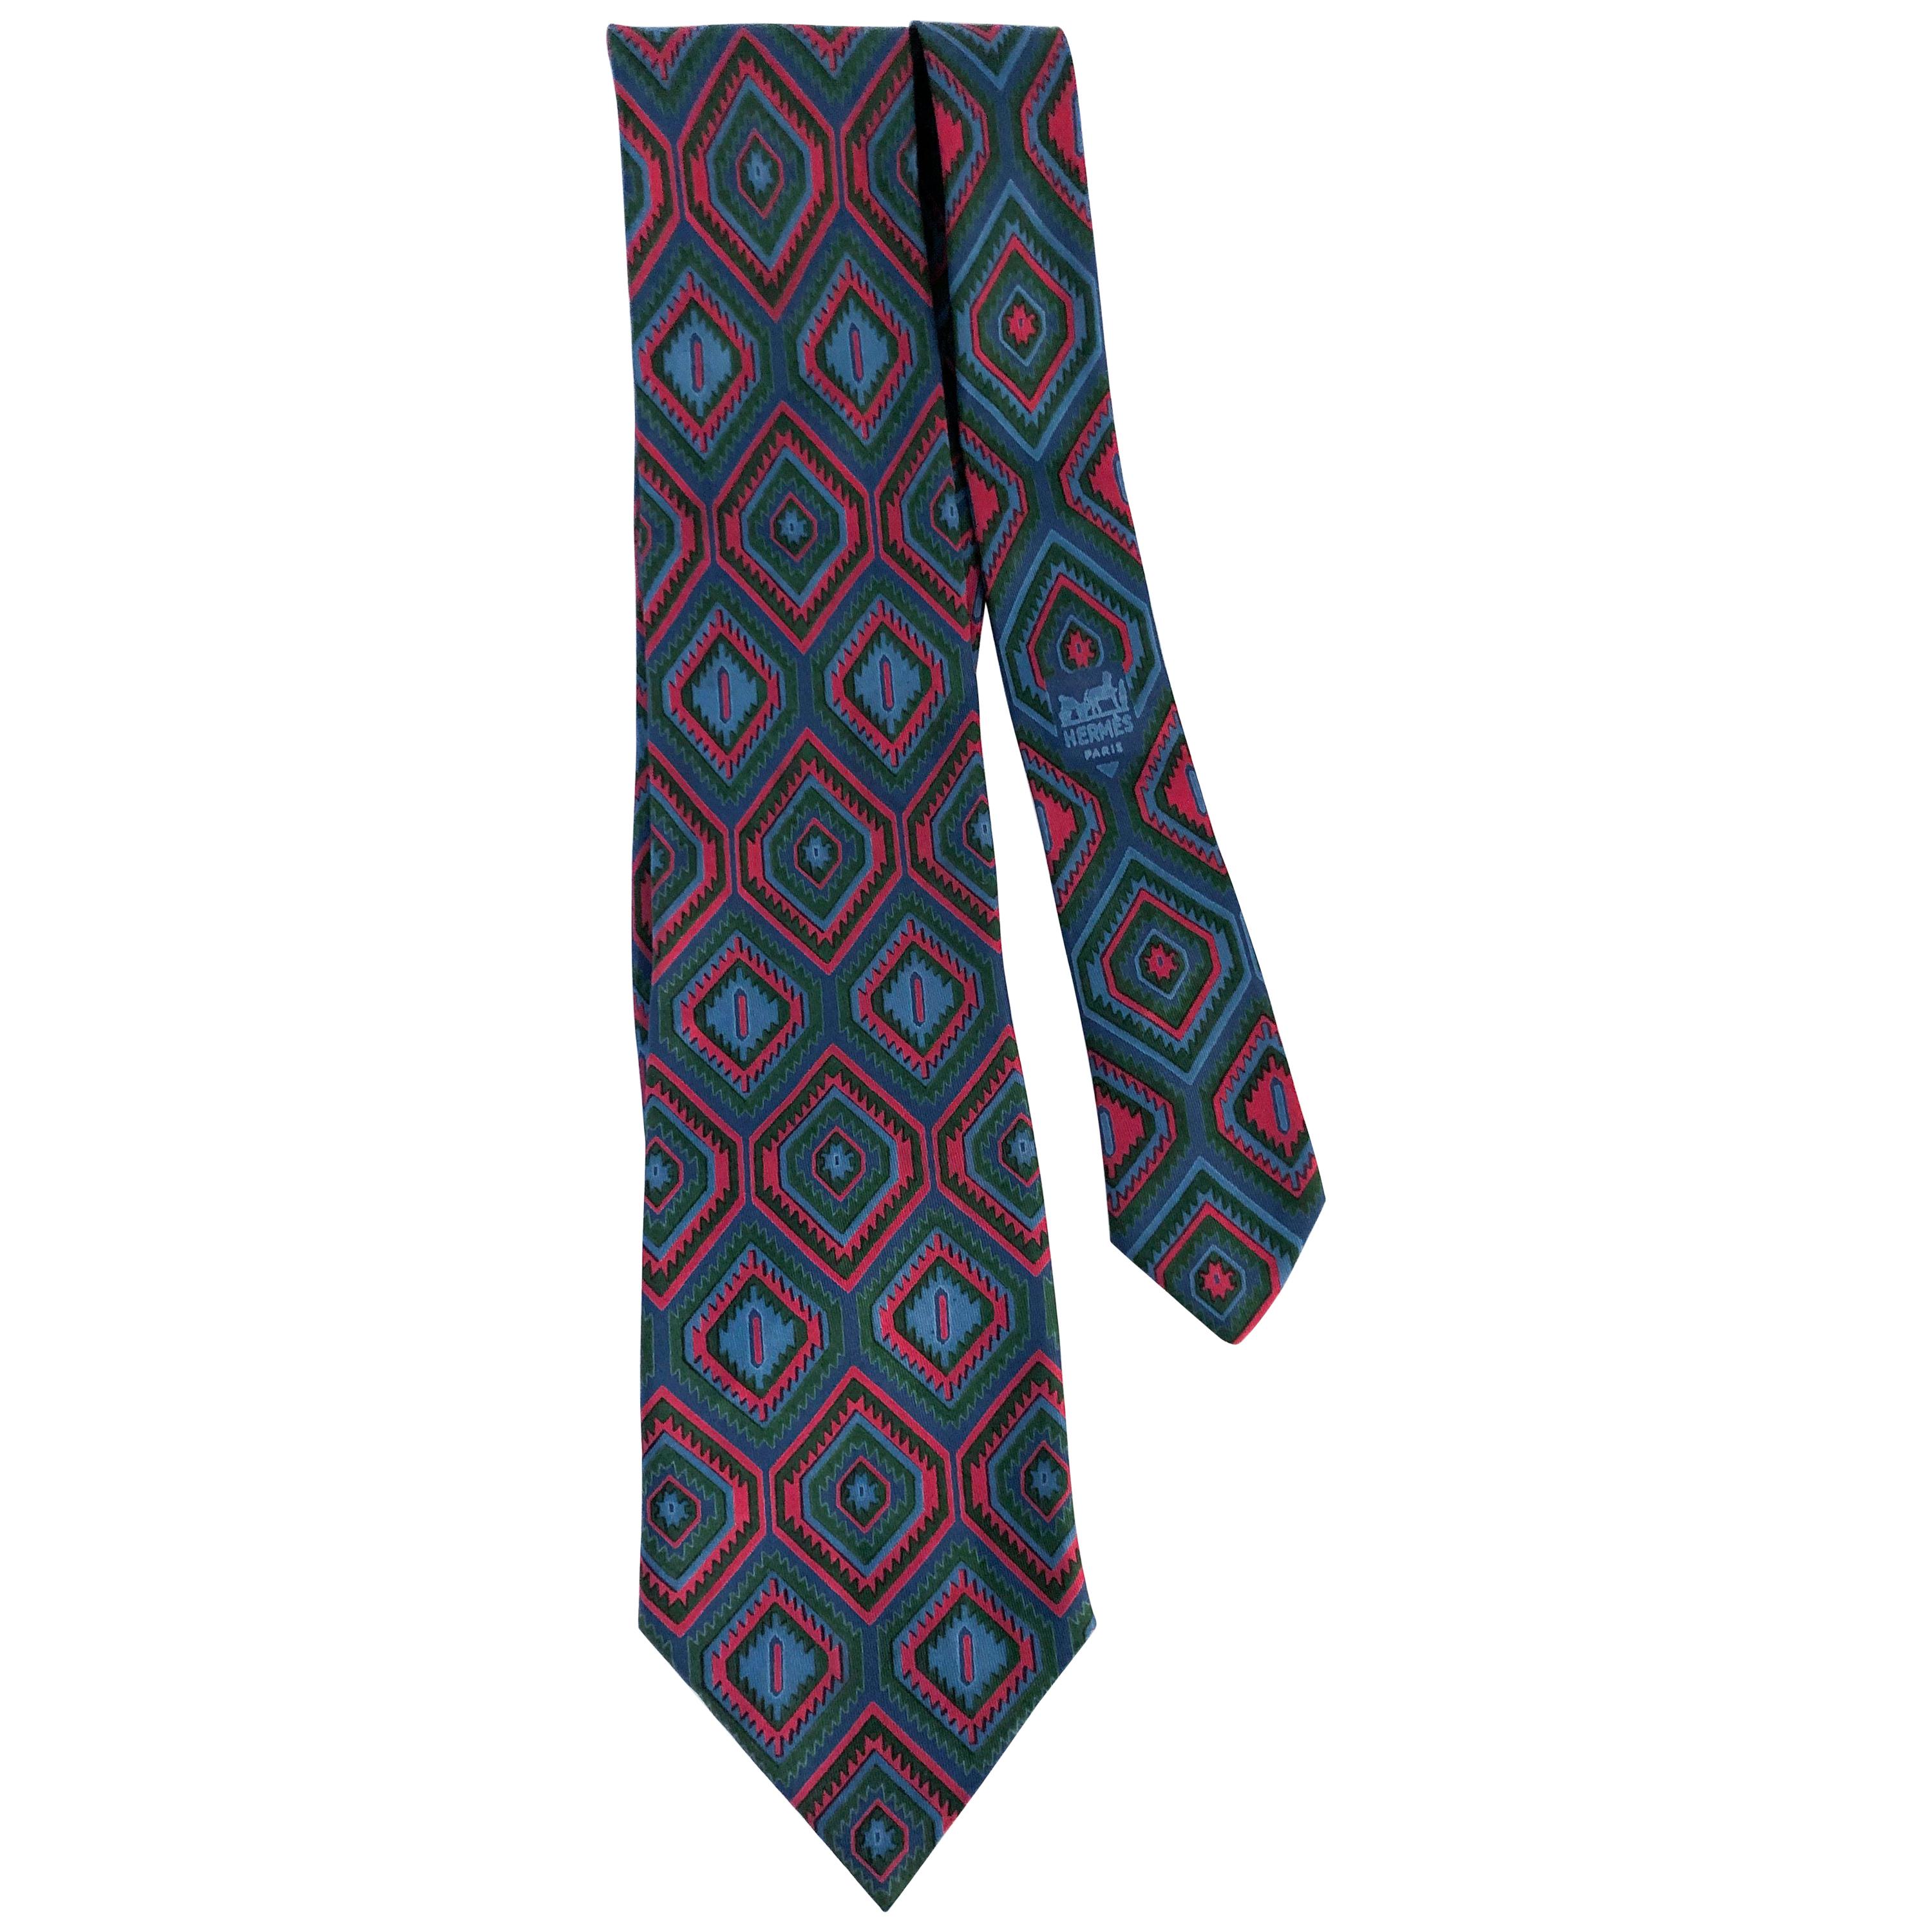 Hermès SIlk Tie with Diamond Pattern